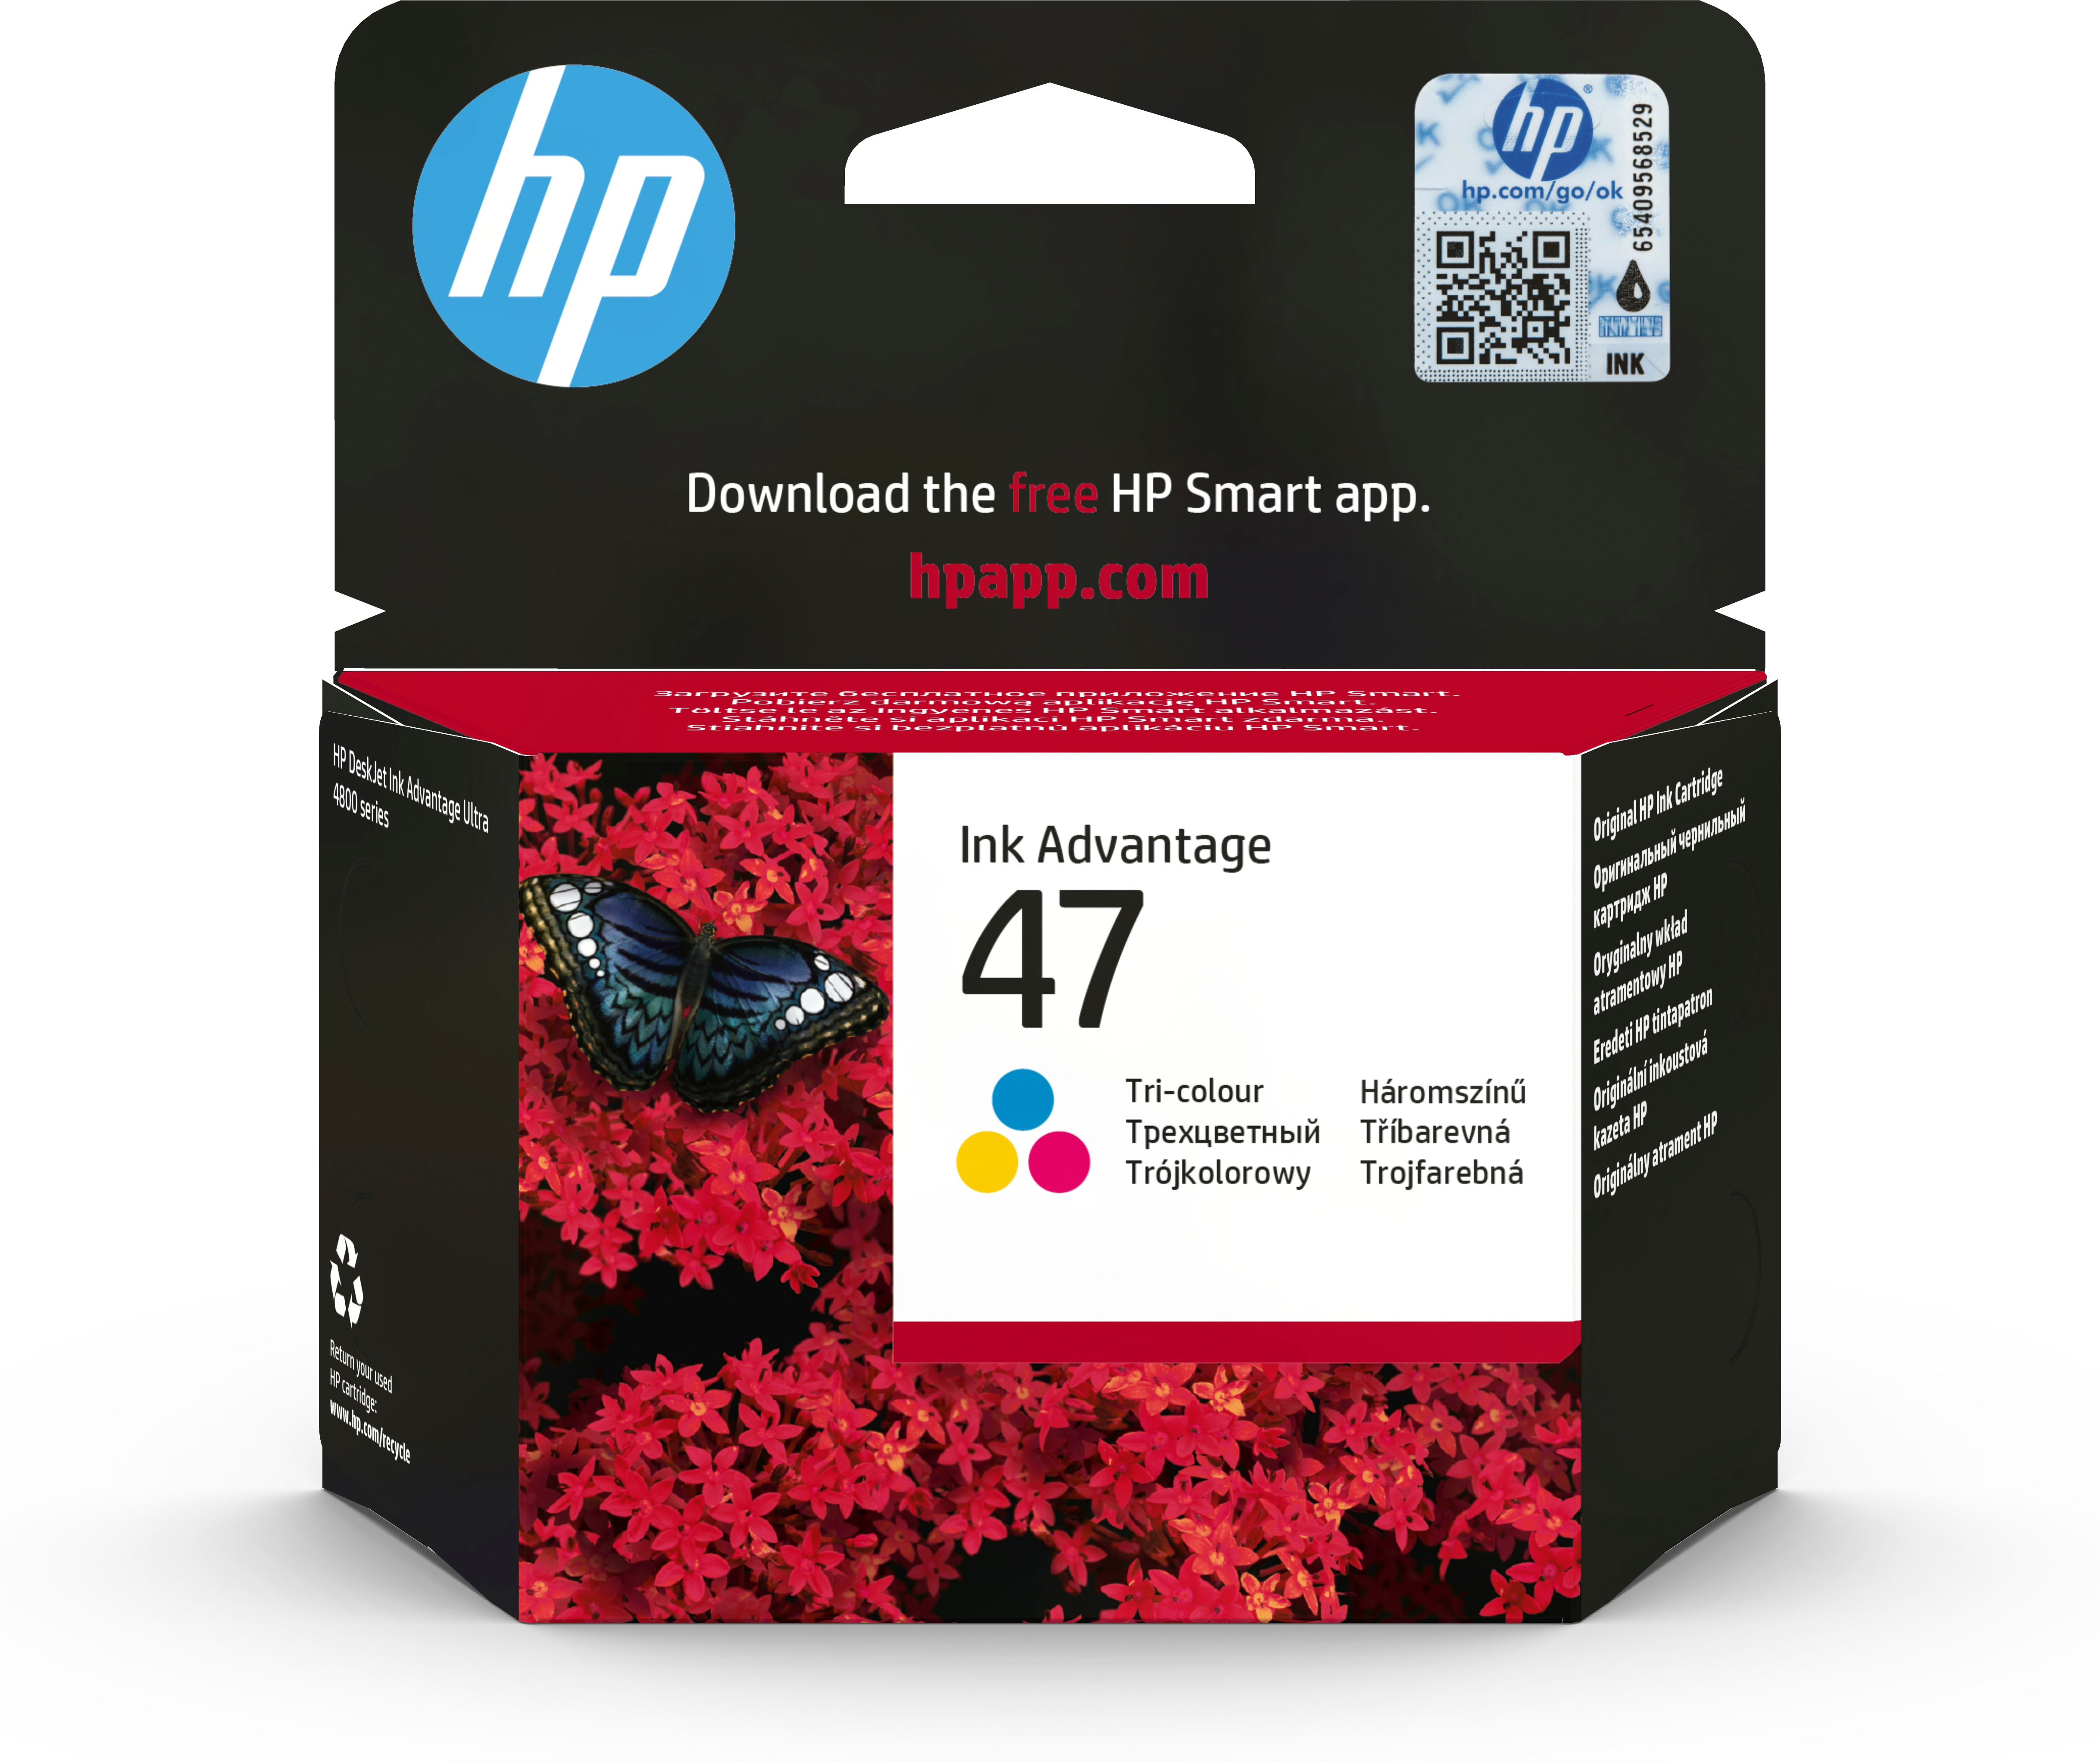 HP 47 Cartouche authentique, trois couleurs